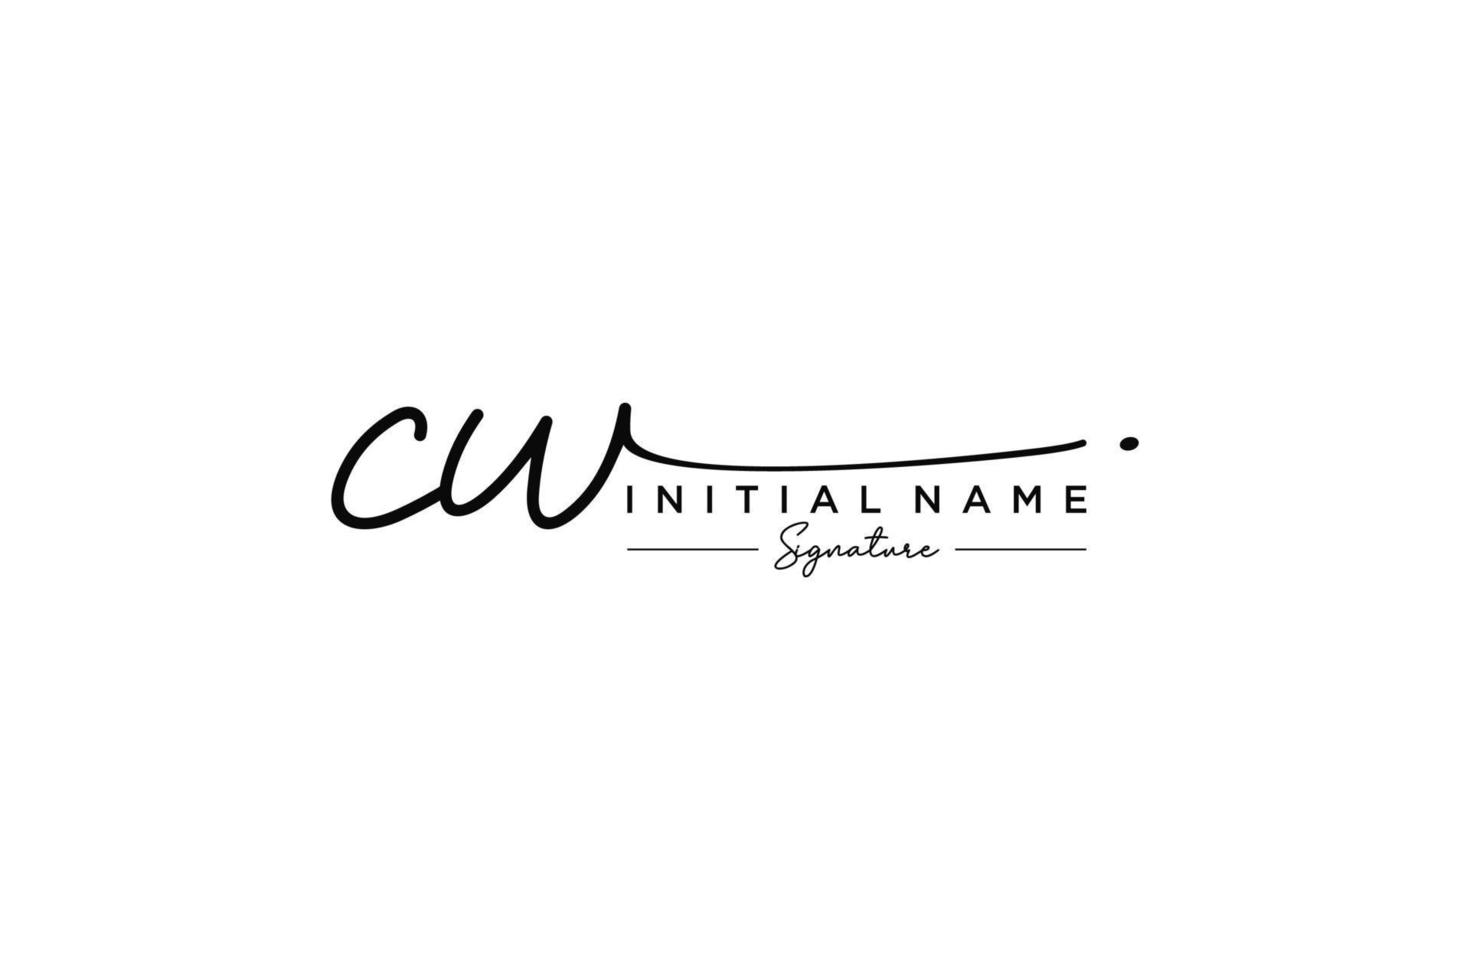 vetor inicial de modelo de logotipo de assinatura cw. ilustração vetorial de letras de caligrafia desenhada à mão.